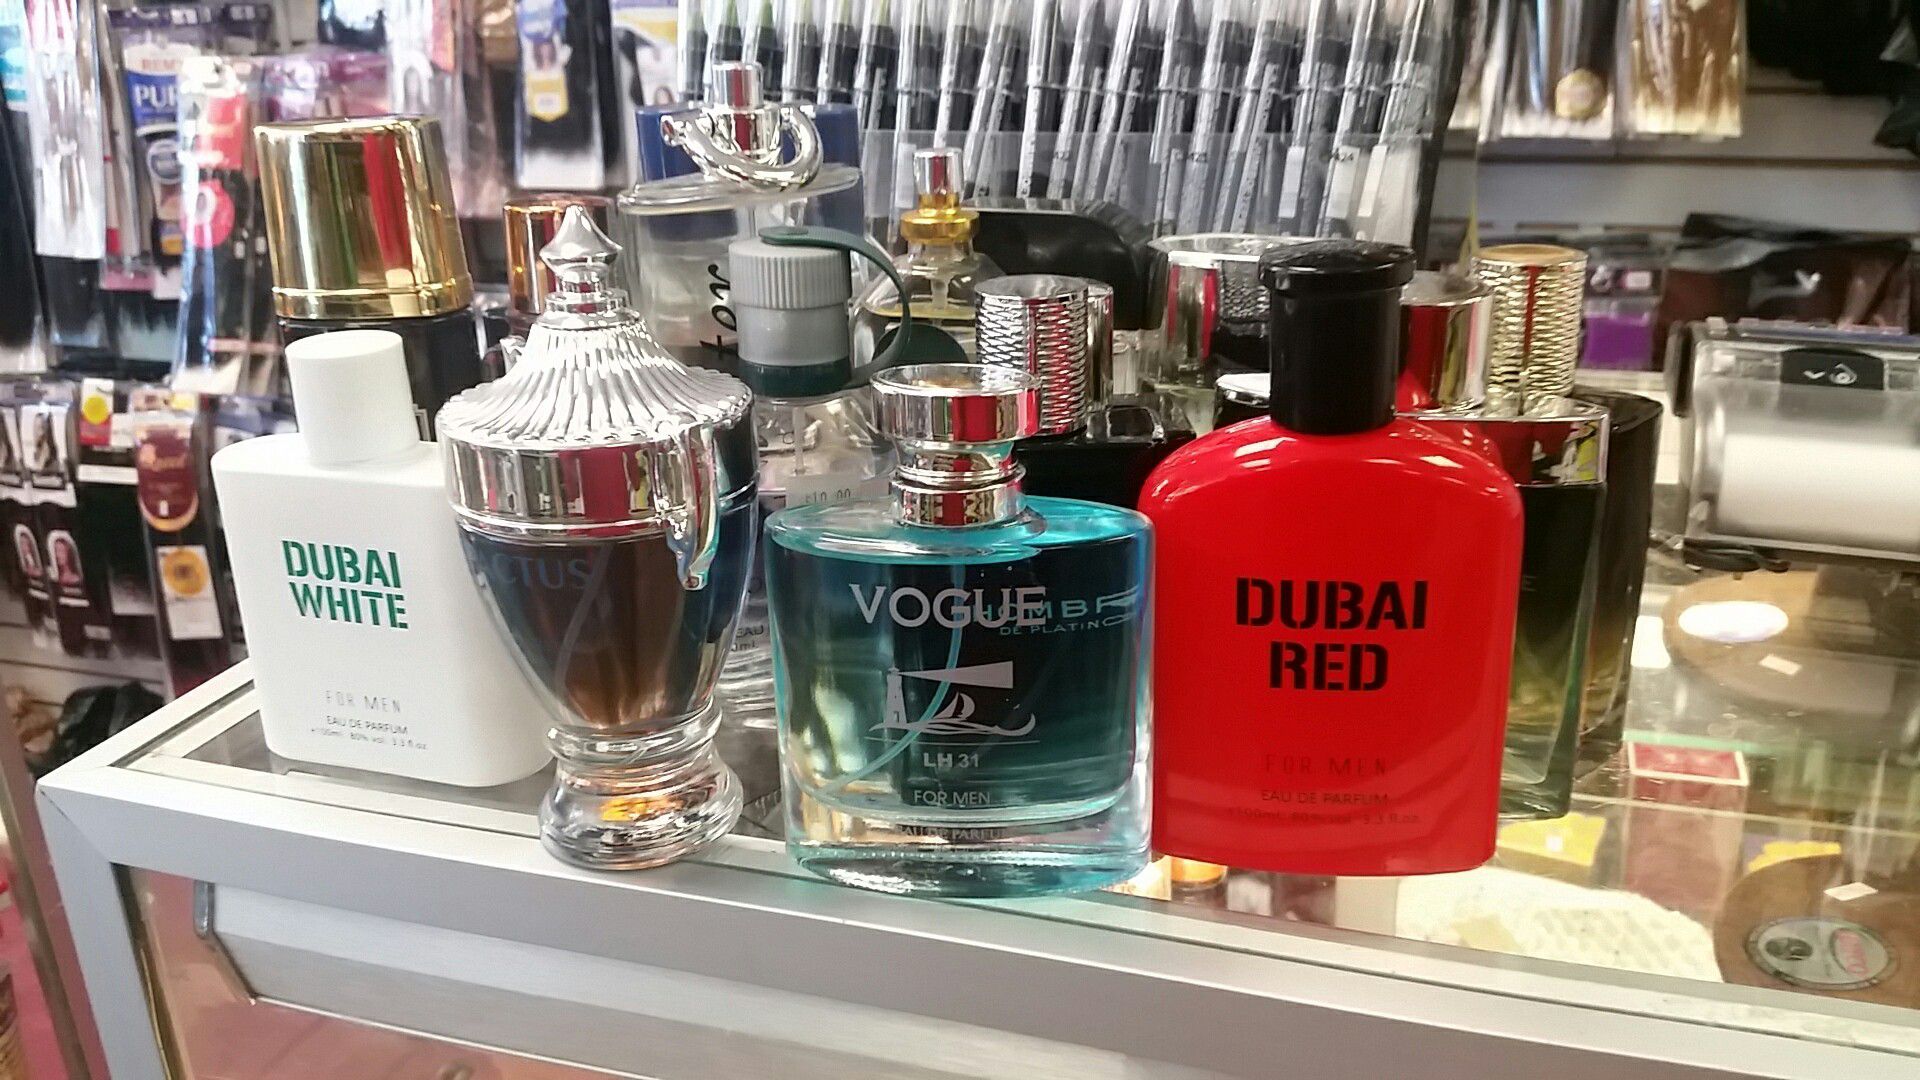 Dubai men's perfume